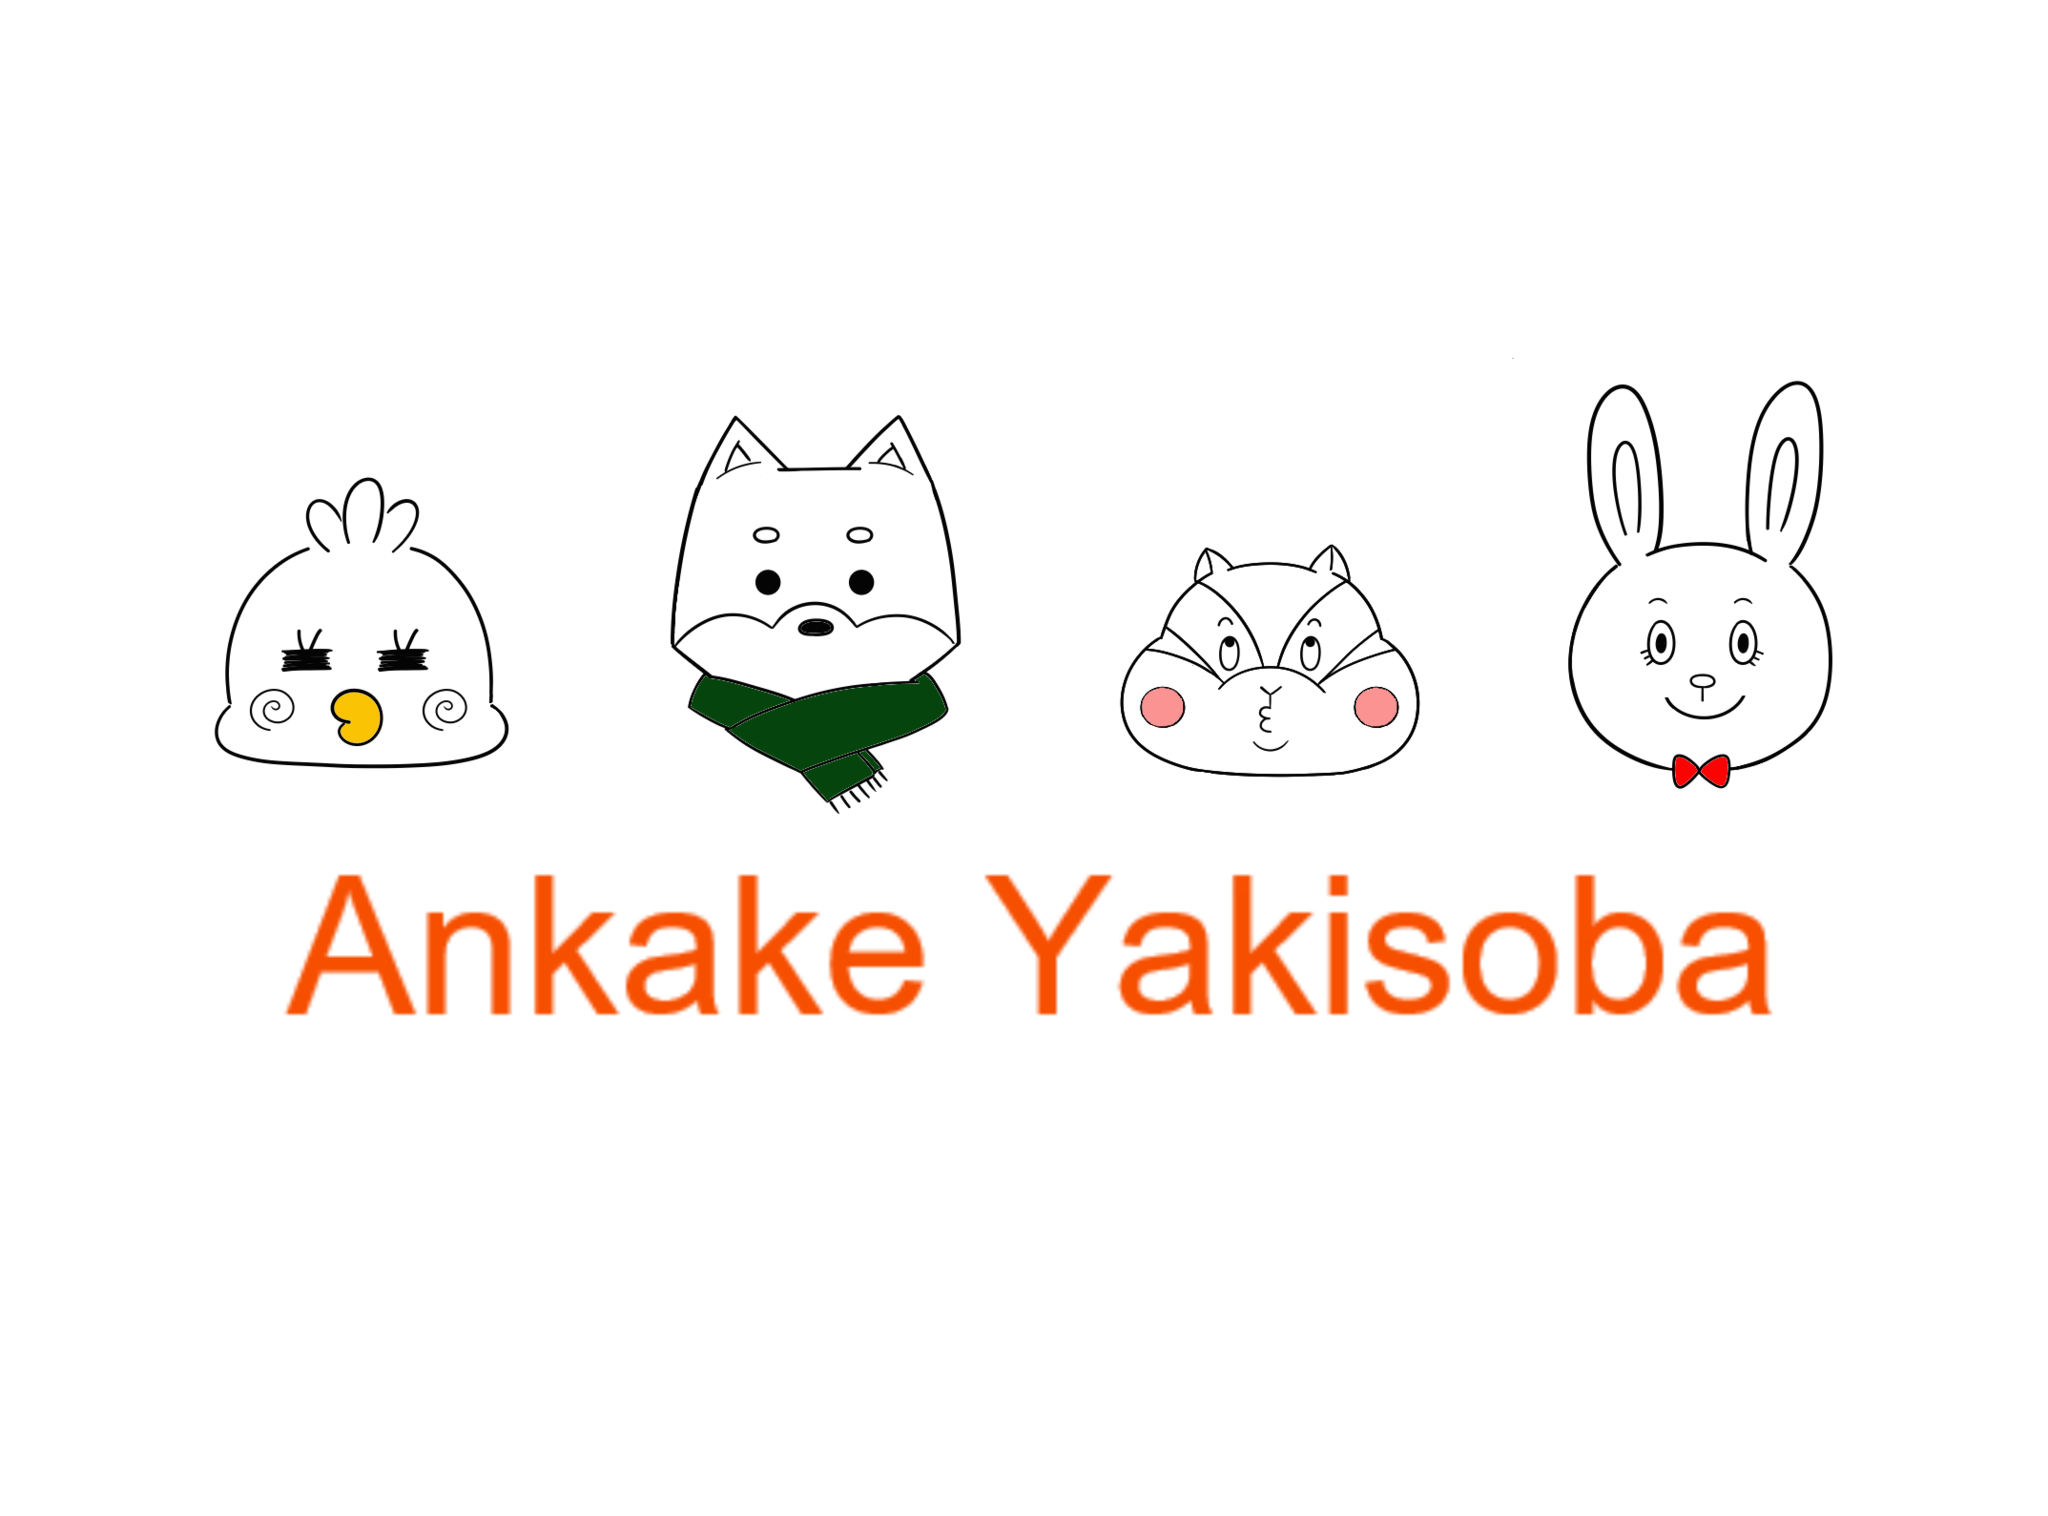 Ankake Yakisoba